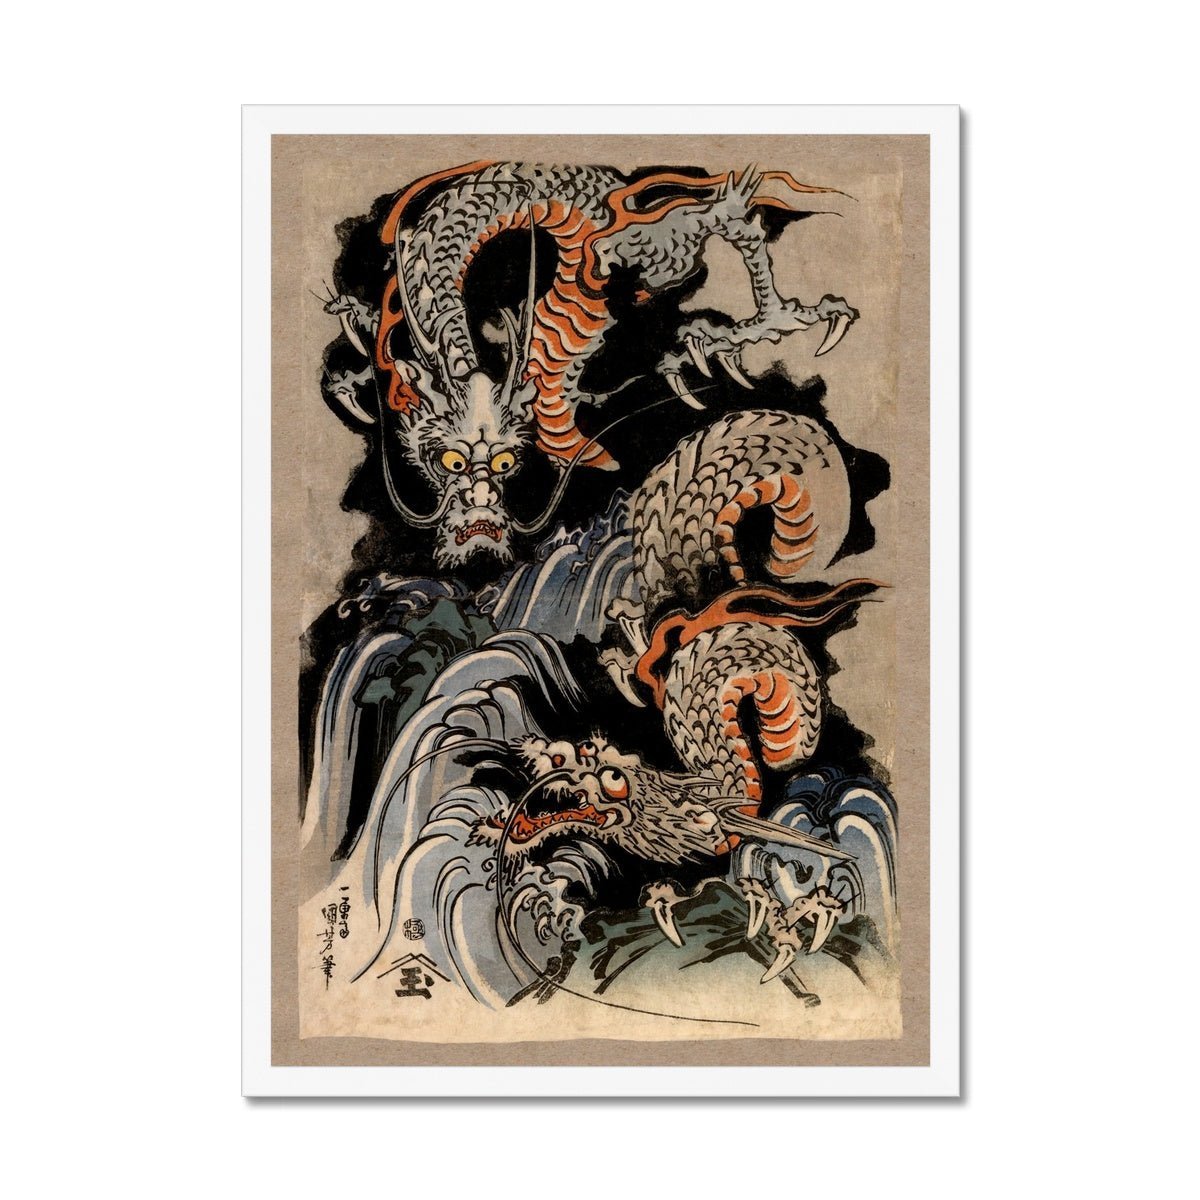 Framed Print 8"x12" / White Frame Utagawa Kuniyoshi Asian Dragon: Japanese Mythology Ukiyo-e Antique Serpent Wood Block Yokai Dragon Decor Framed Art Print